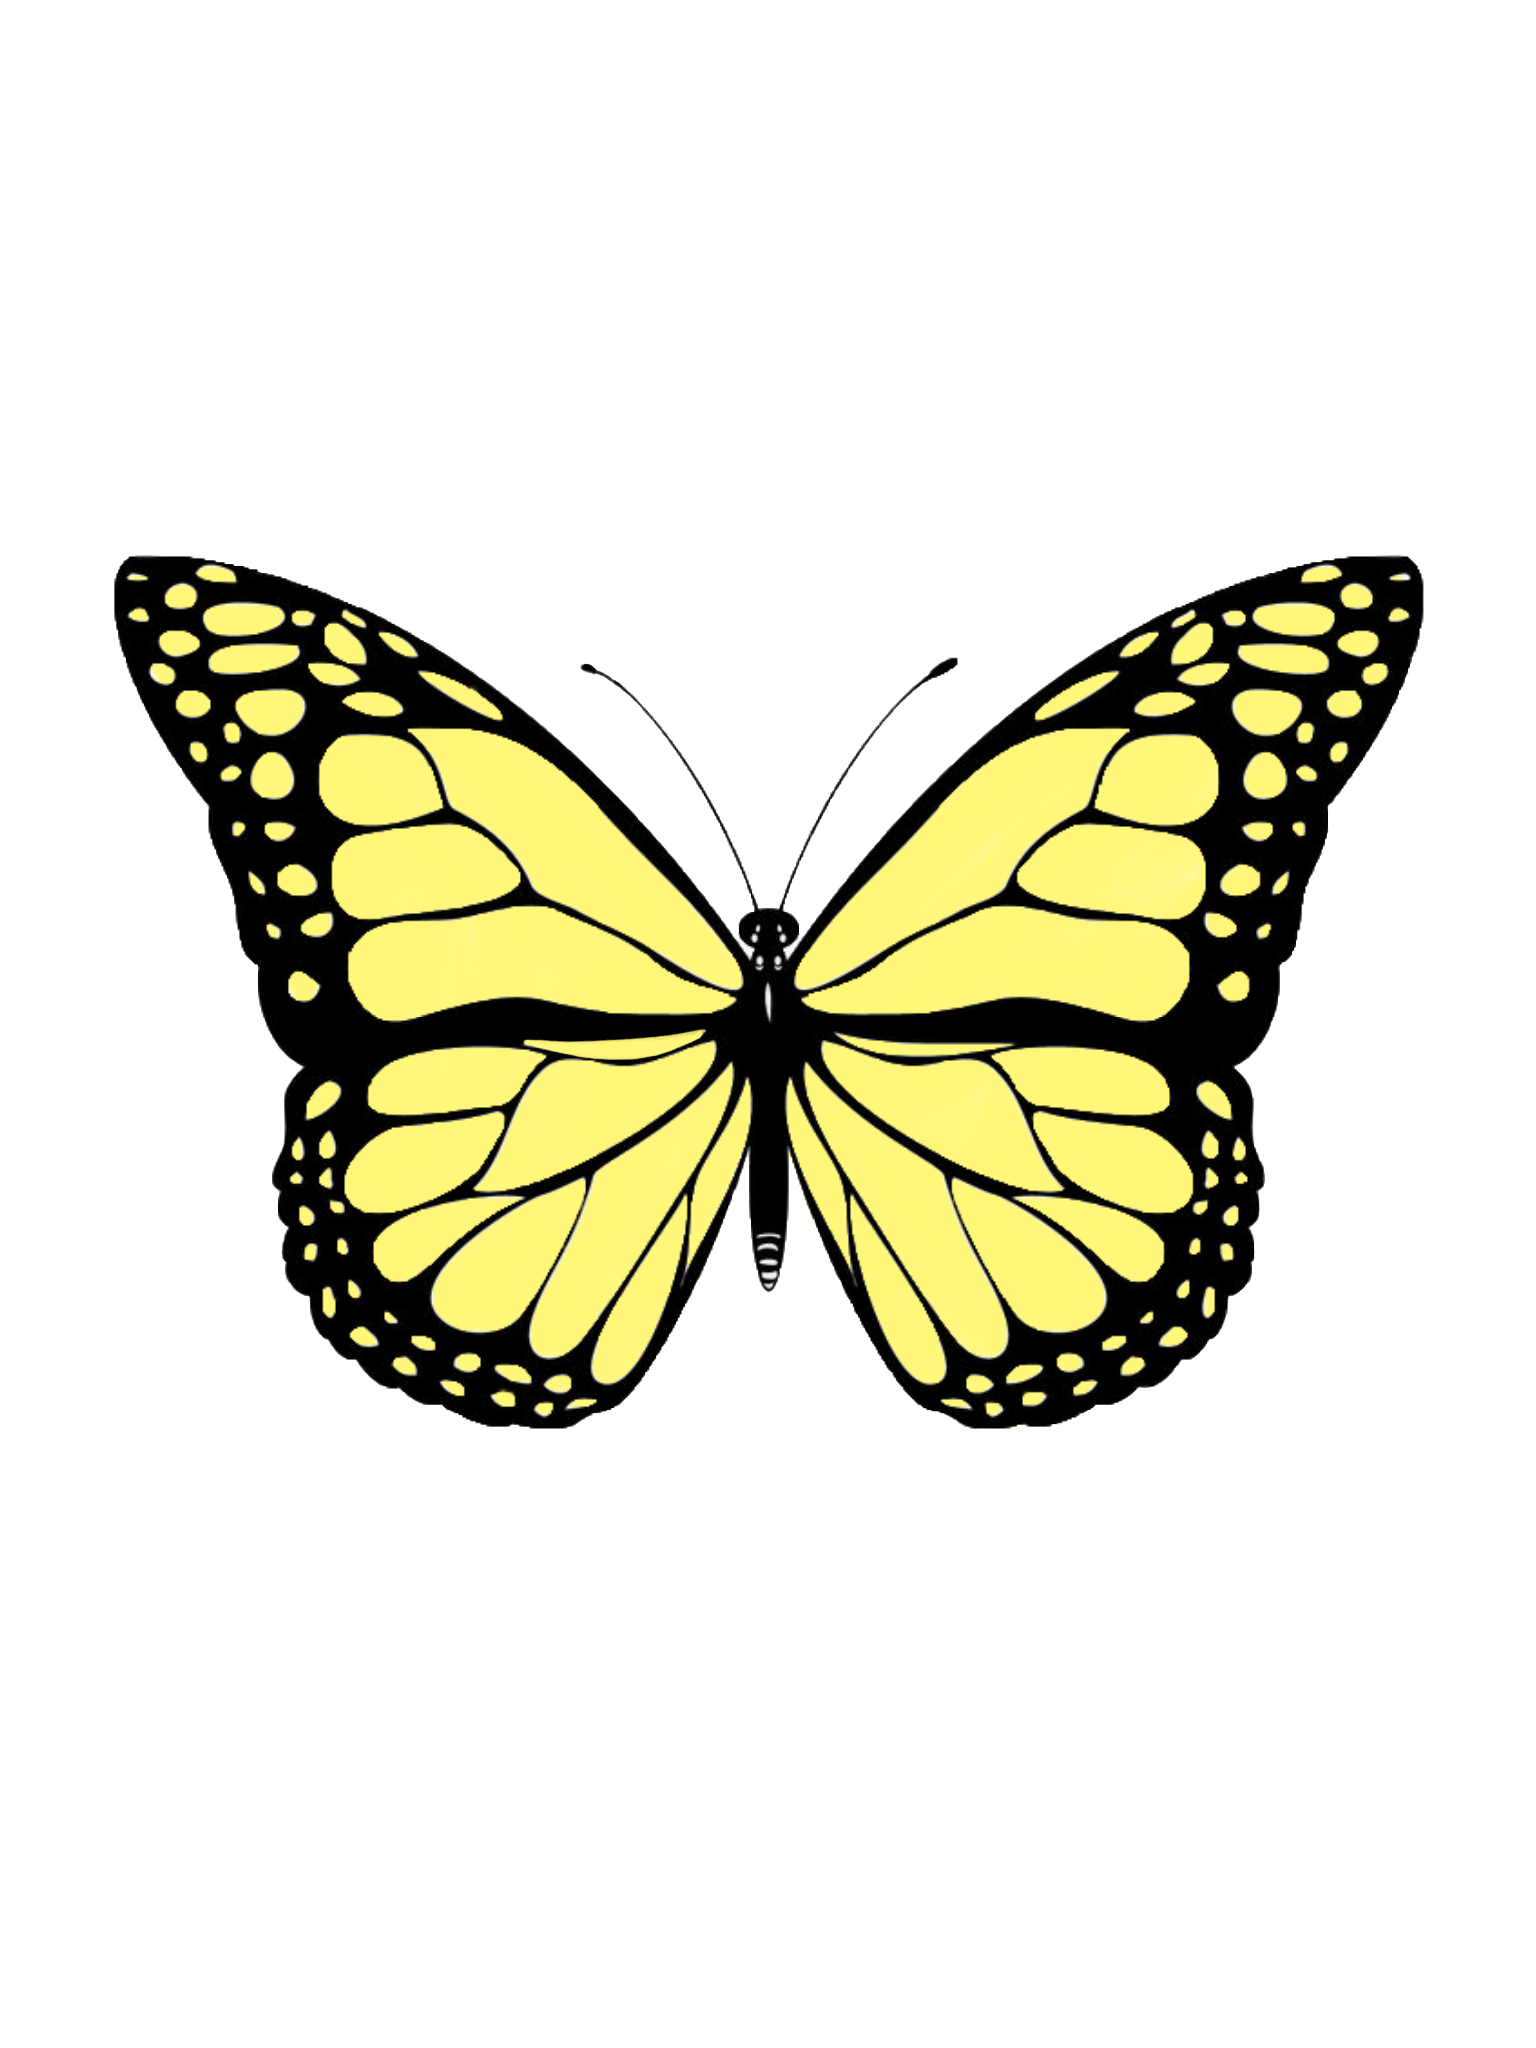 Yellow butterfly sticker. Butterfly wallpaper iphone, Butterfly painting, Butterfly art painting